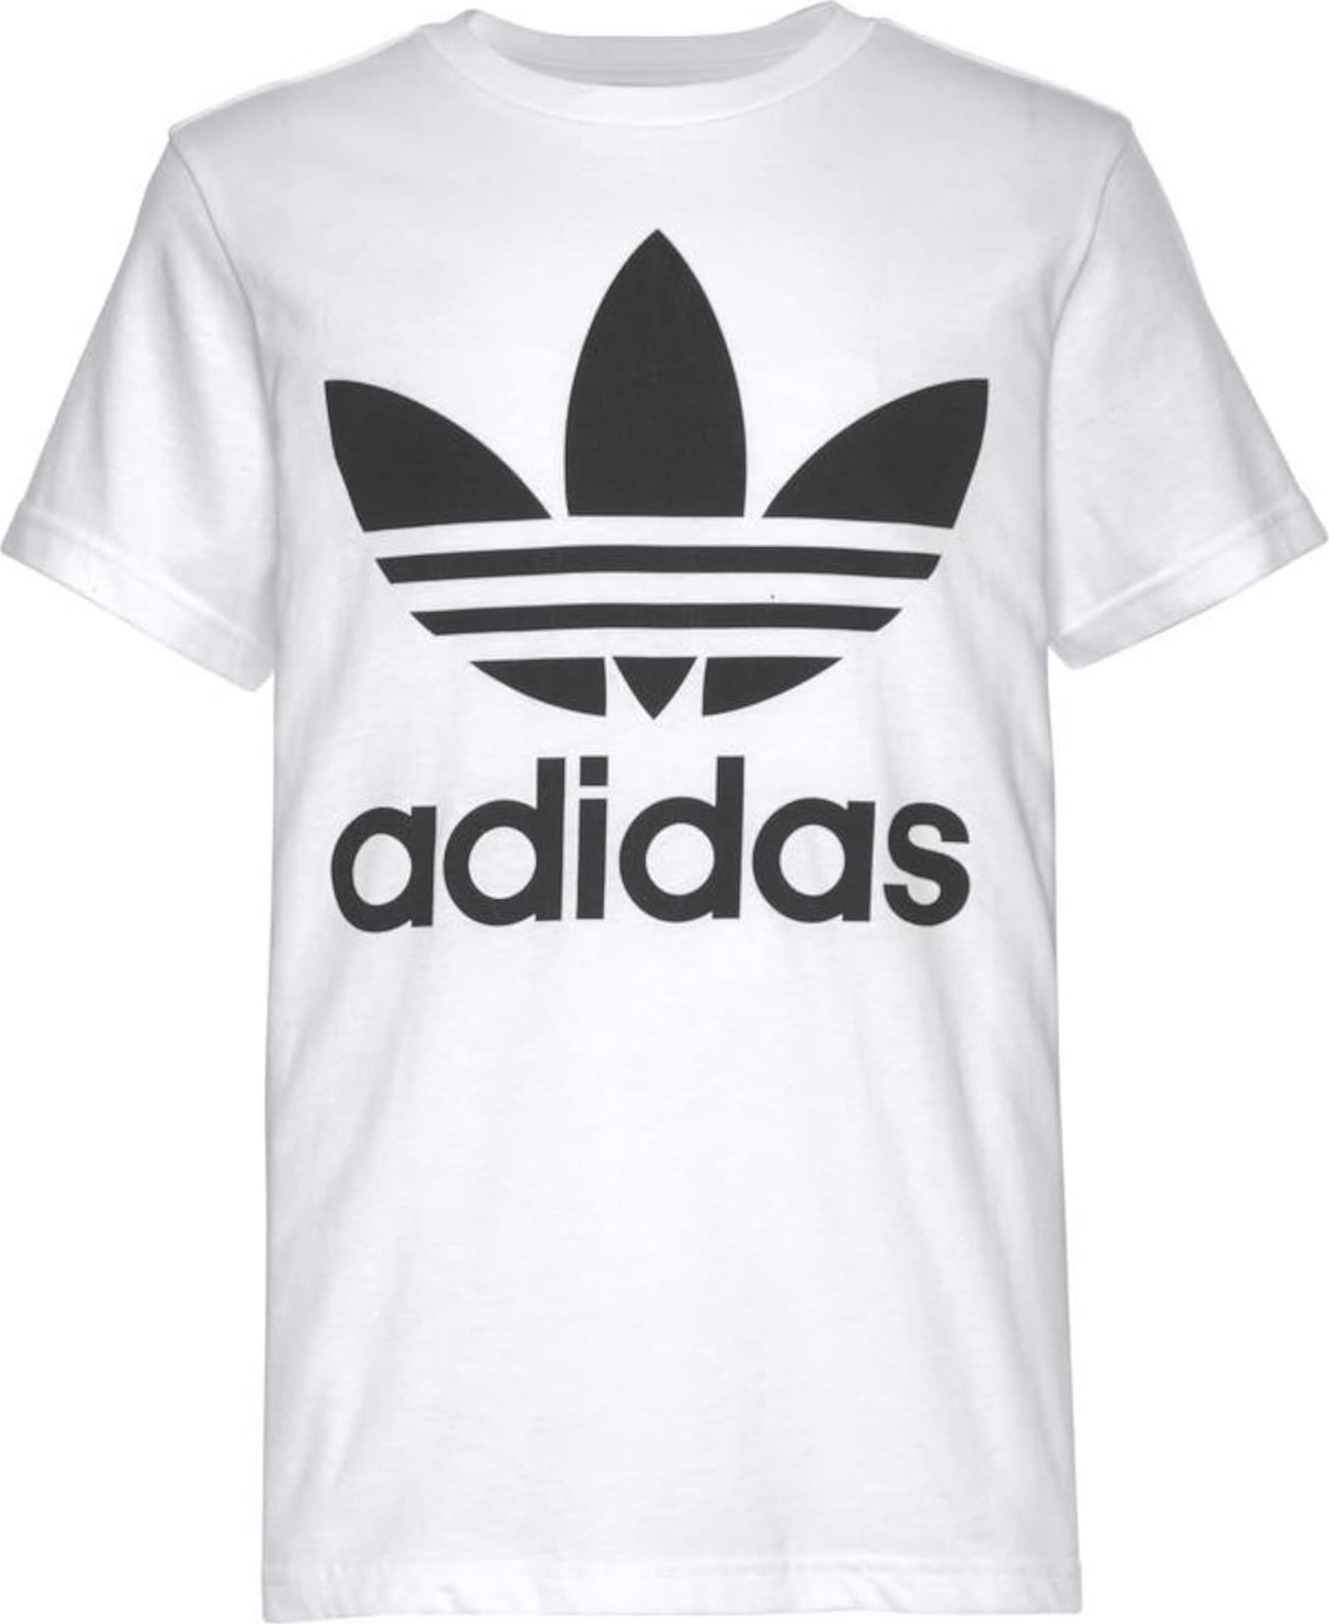 Tričko 'Trefoil' adidas Originals černá / bílá